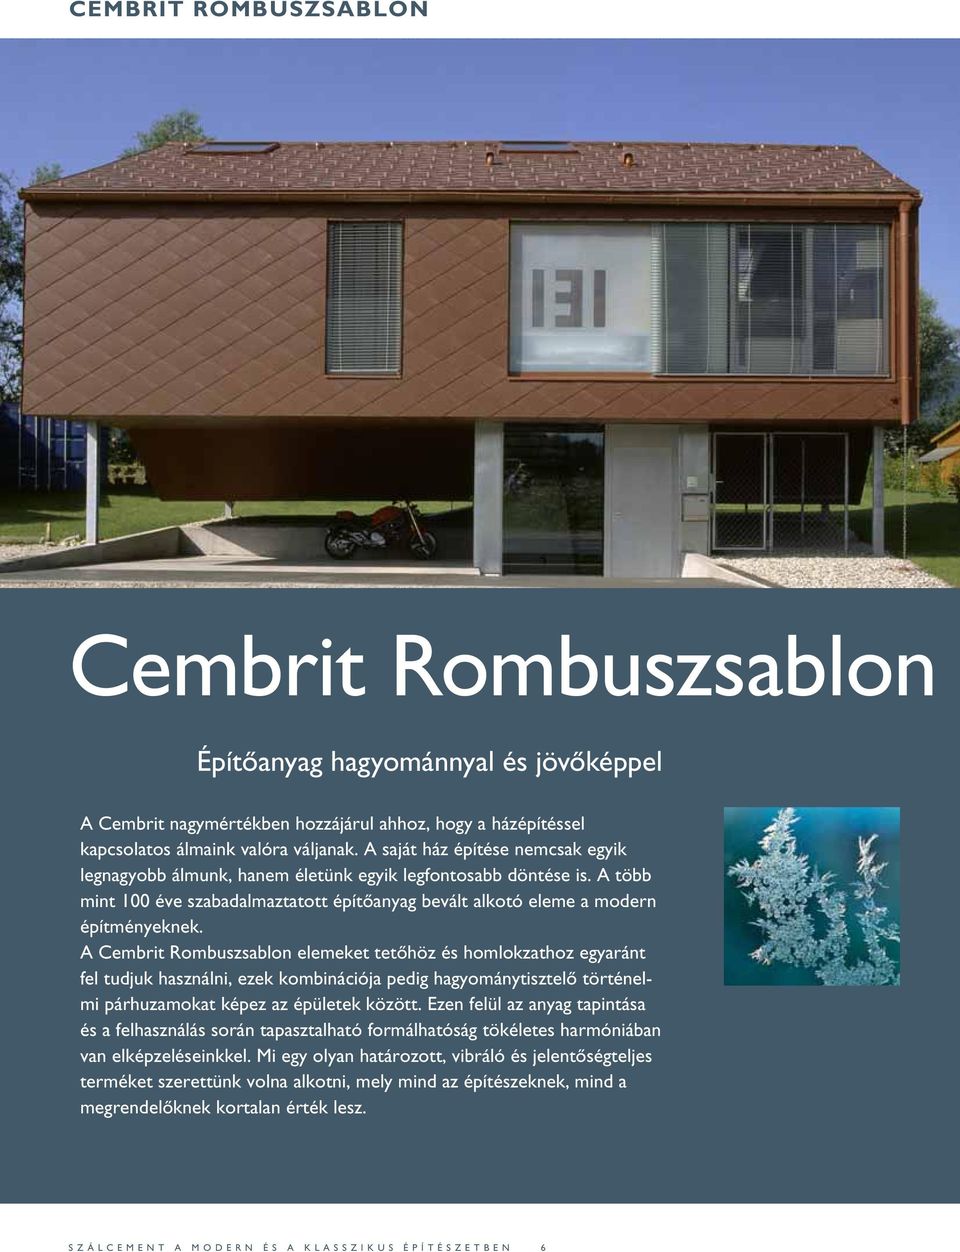 A Cembrit Rombuszsablon elemeket tetőhöz és homlokzathoz egyaránt fel tudjuk használni, ezek kombinációja pedig hagyománytisztelő történelmi párhuzamokat képez az épületek között.